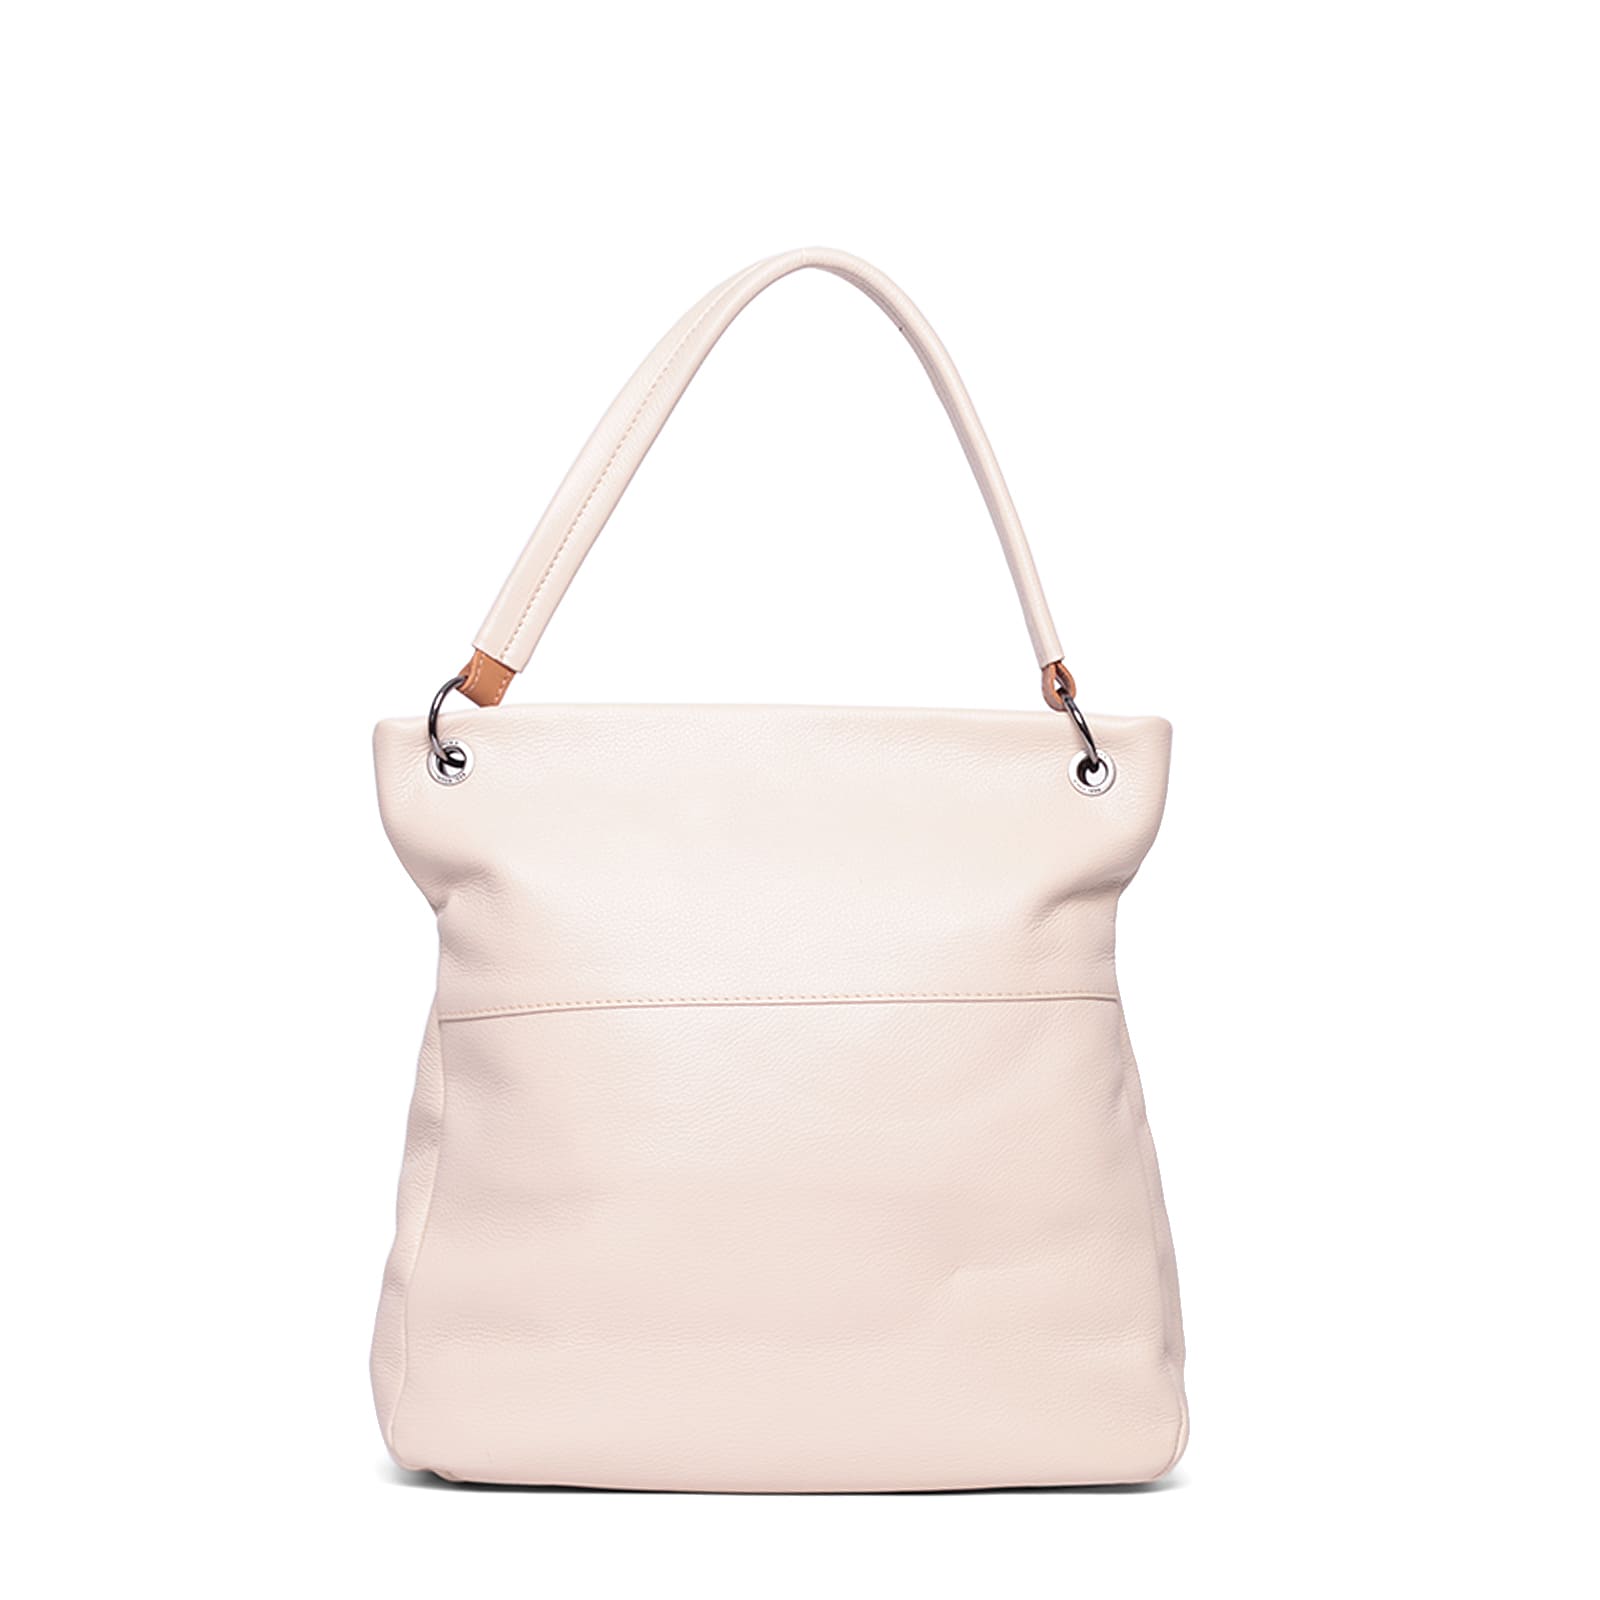 bolsa-shopping-bag-couro-61105-v24-off-white-5